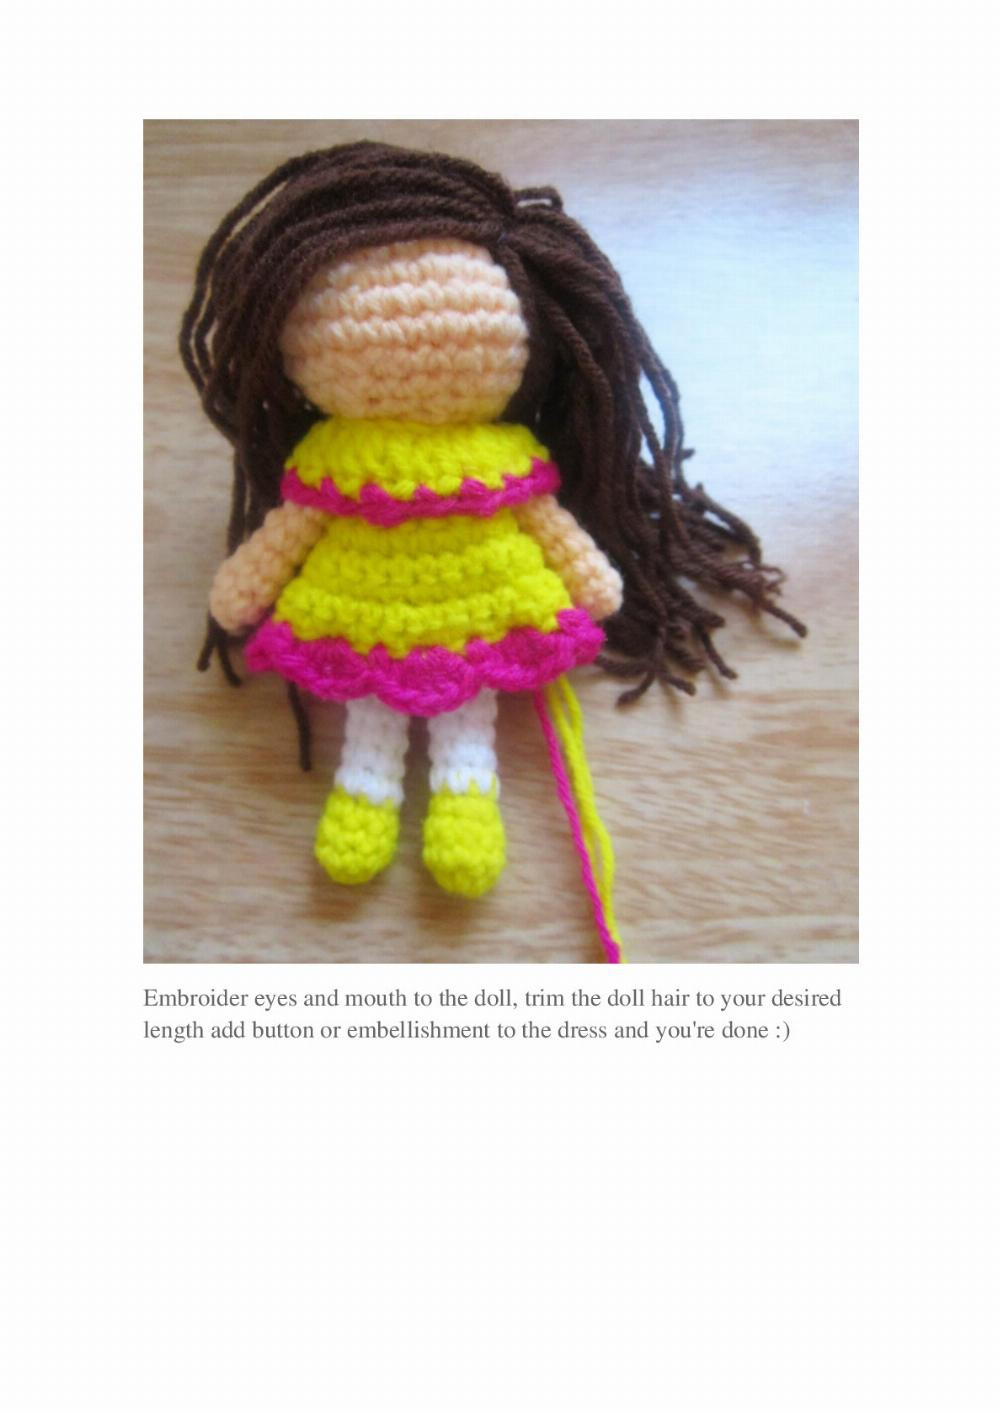 Little Amigurumi doll pattern